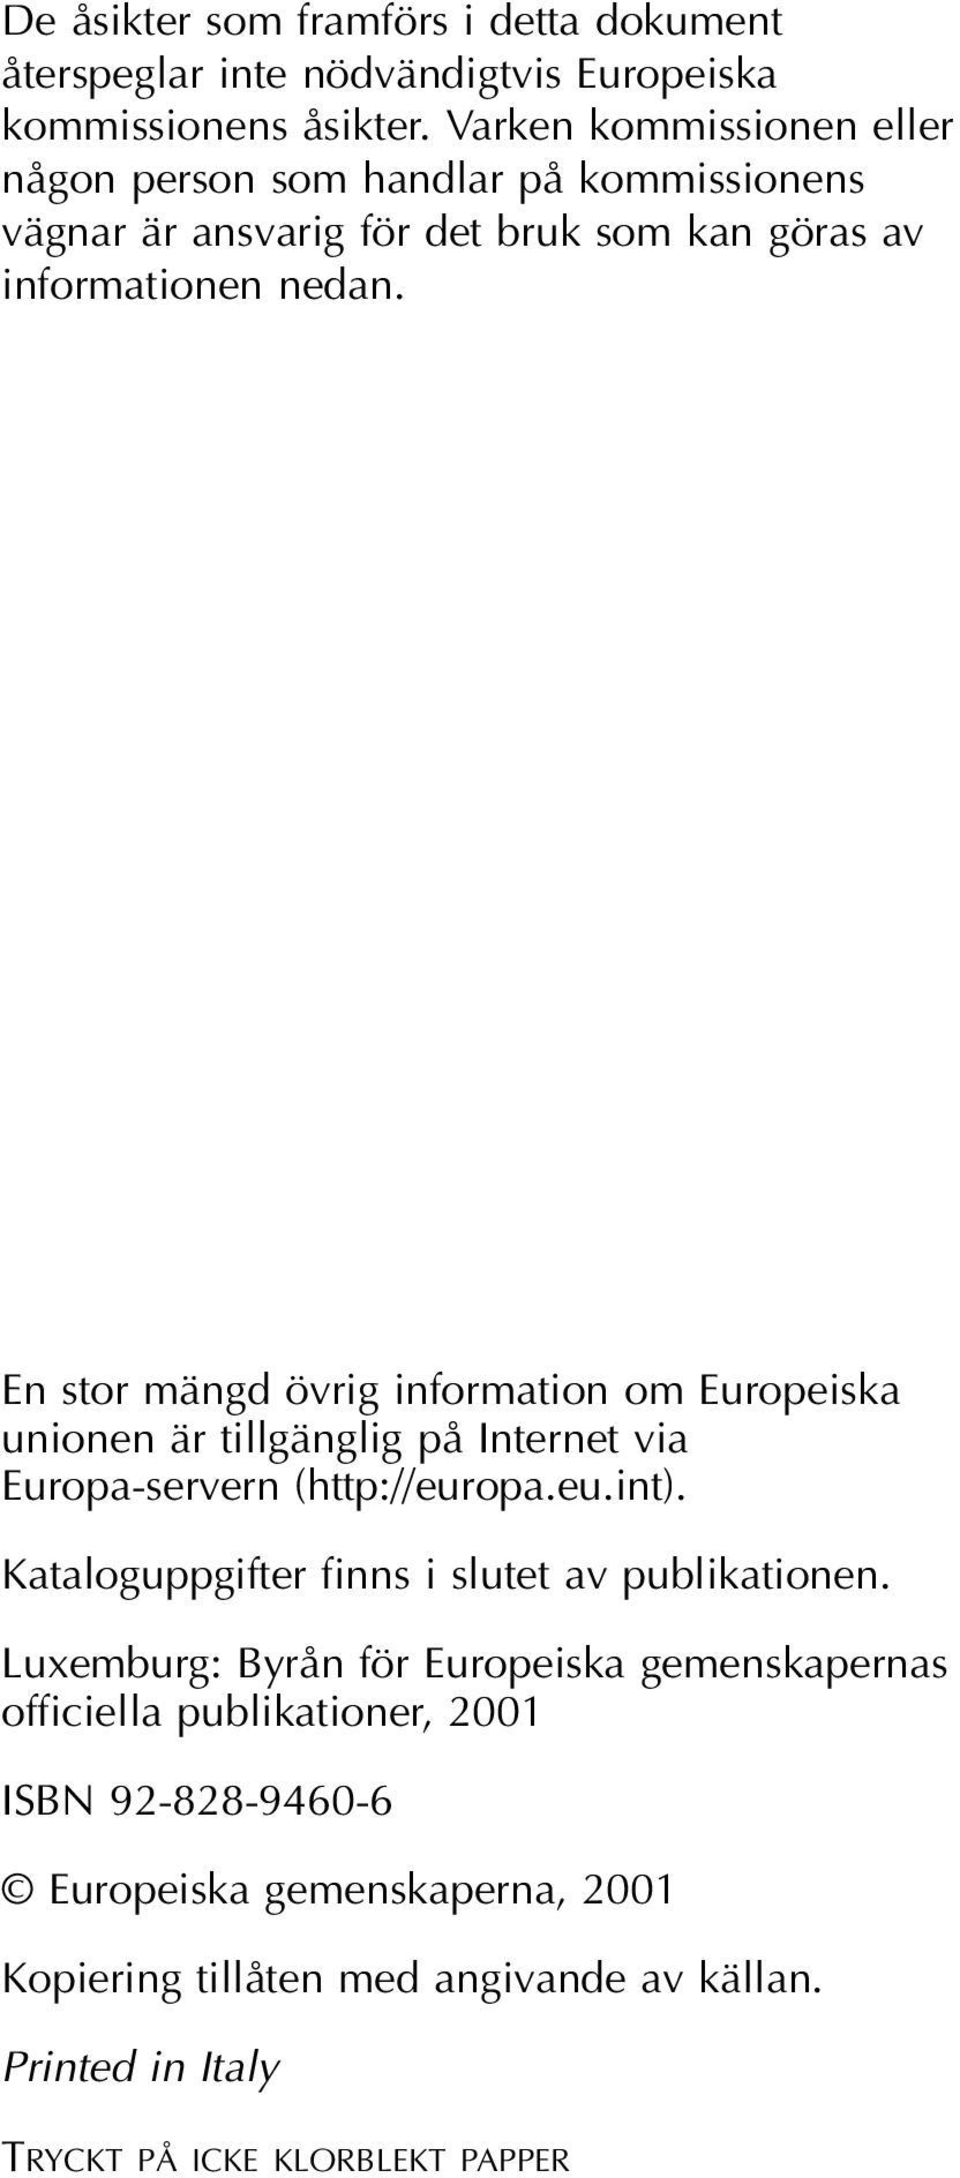 En stor mängd övrig information om Europeiska unionen är tillgänglig på Internet via Europa-servern (http://europa.eu.int).